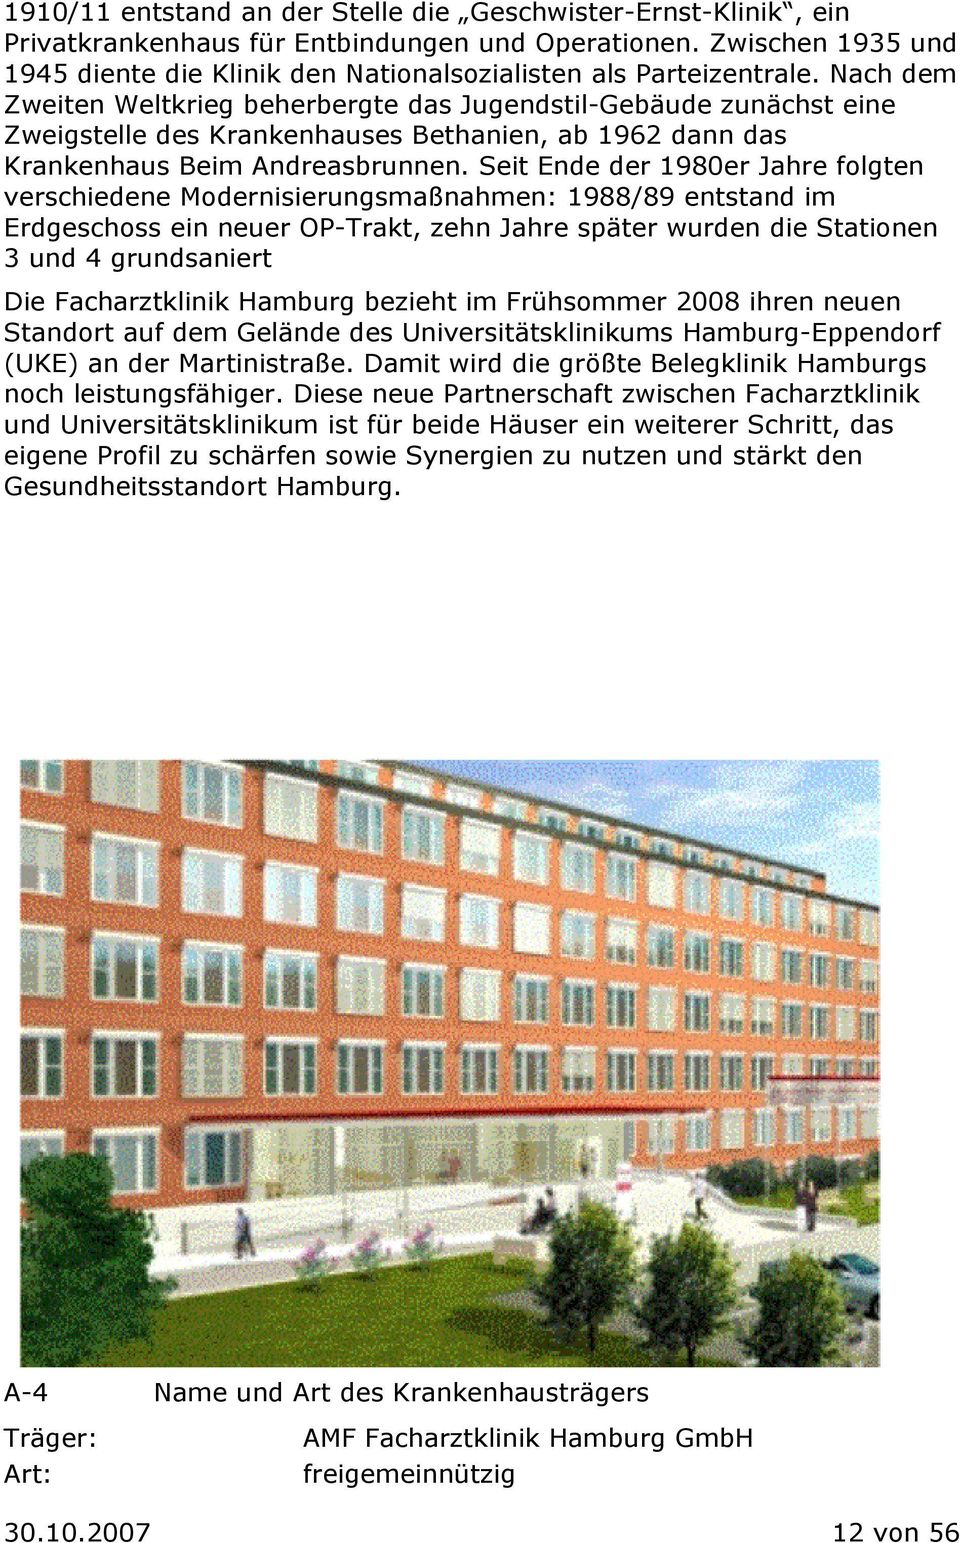 Nach dem Zweiten Weltkrieg beherbergte das Jugendstil-Gebäude zunächst eine Zweigstelle des Krankenhauses Bethanien, ab 1962 dann das Krankenhaus Beim Andreasbrunnen.